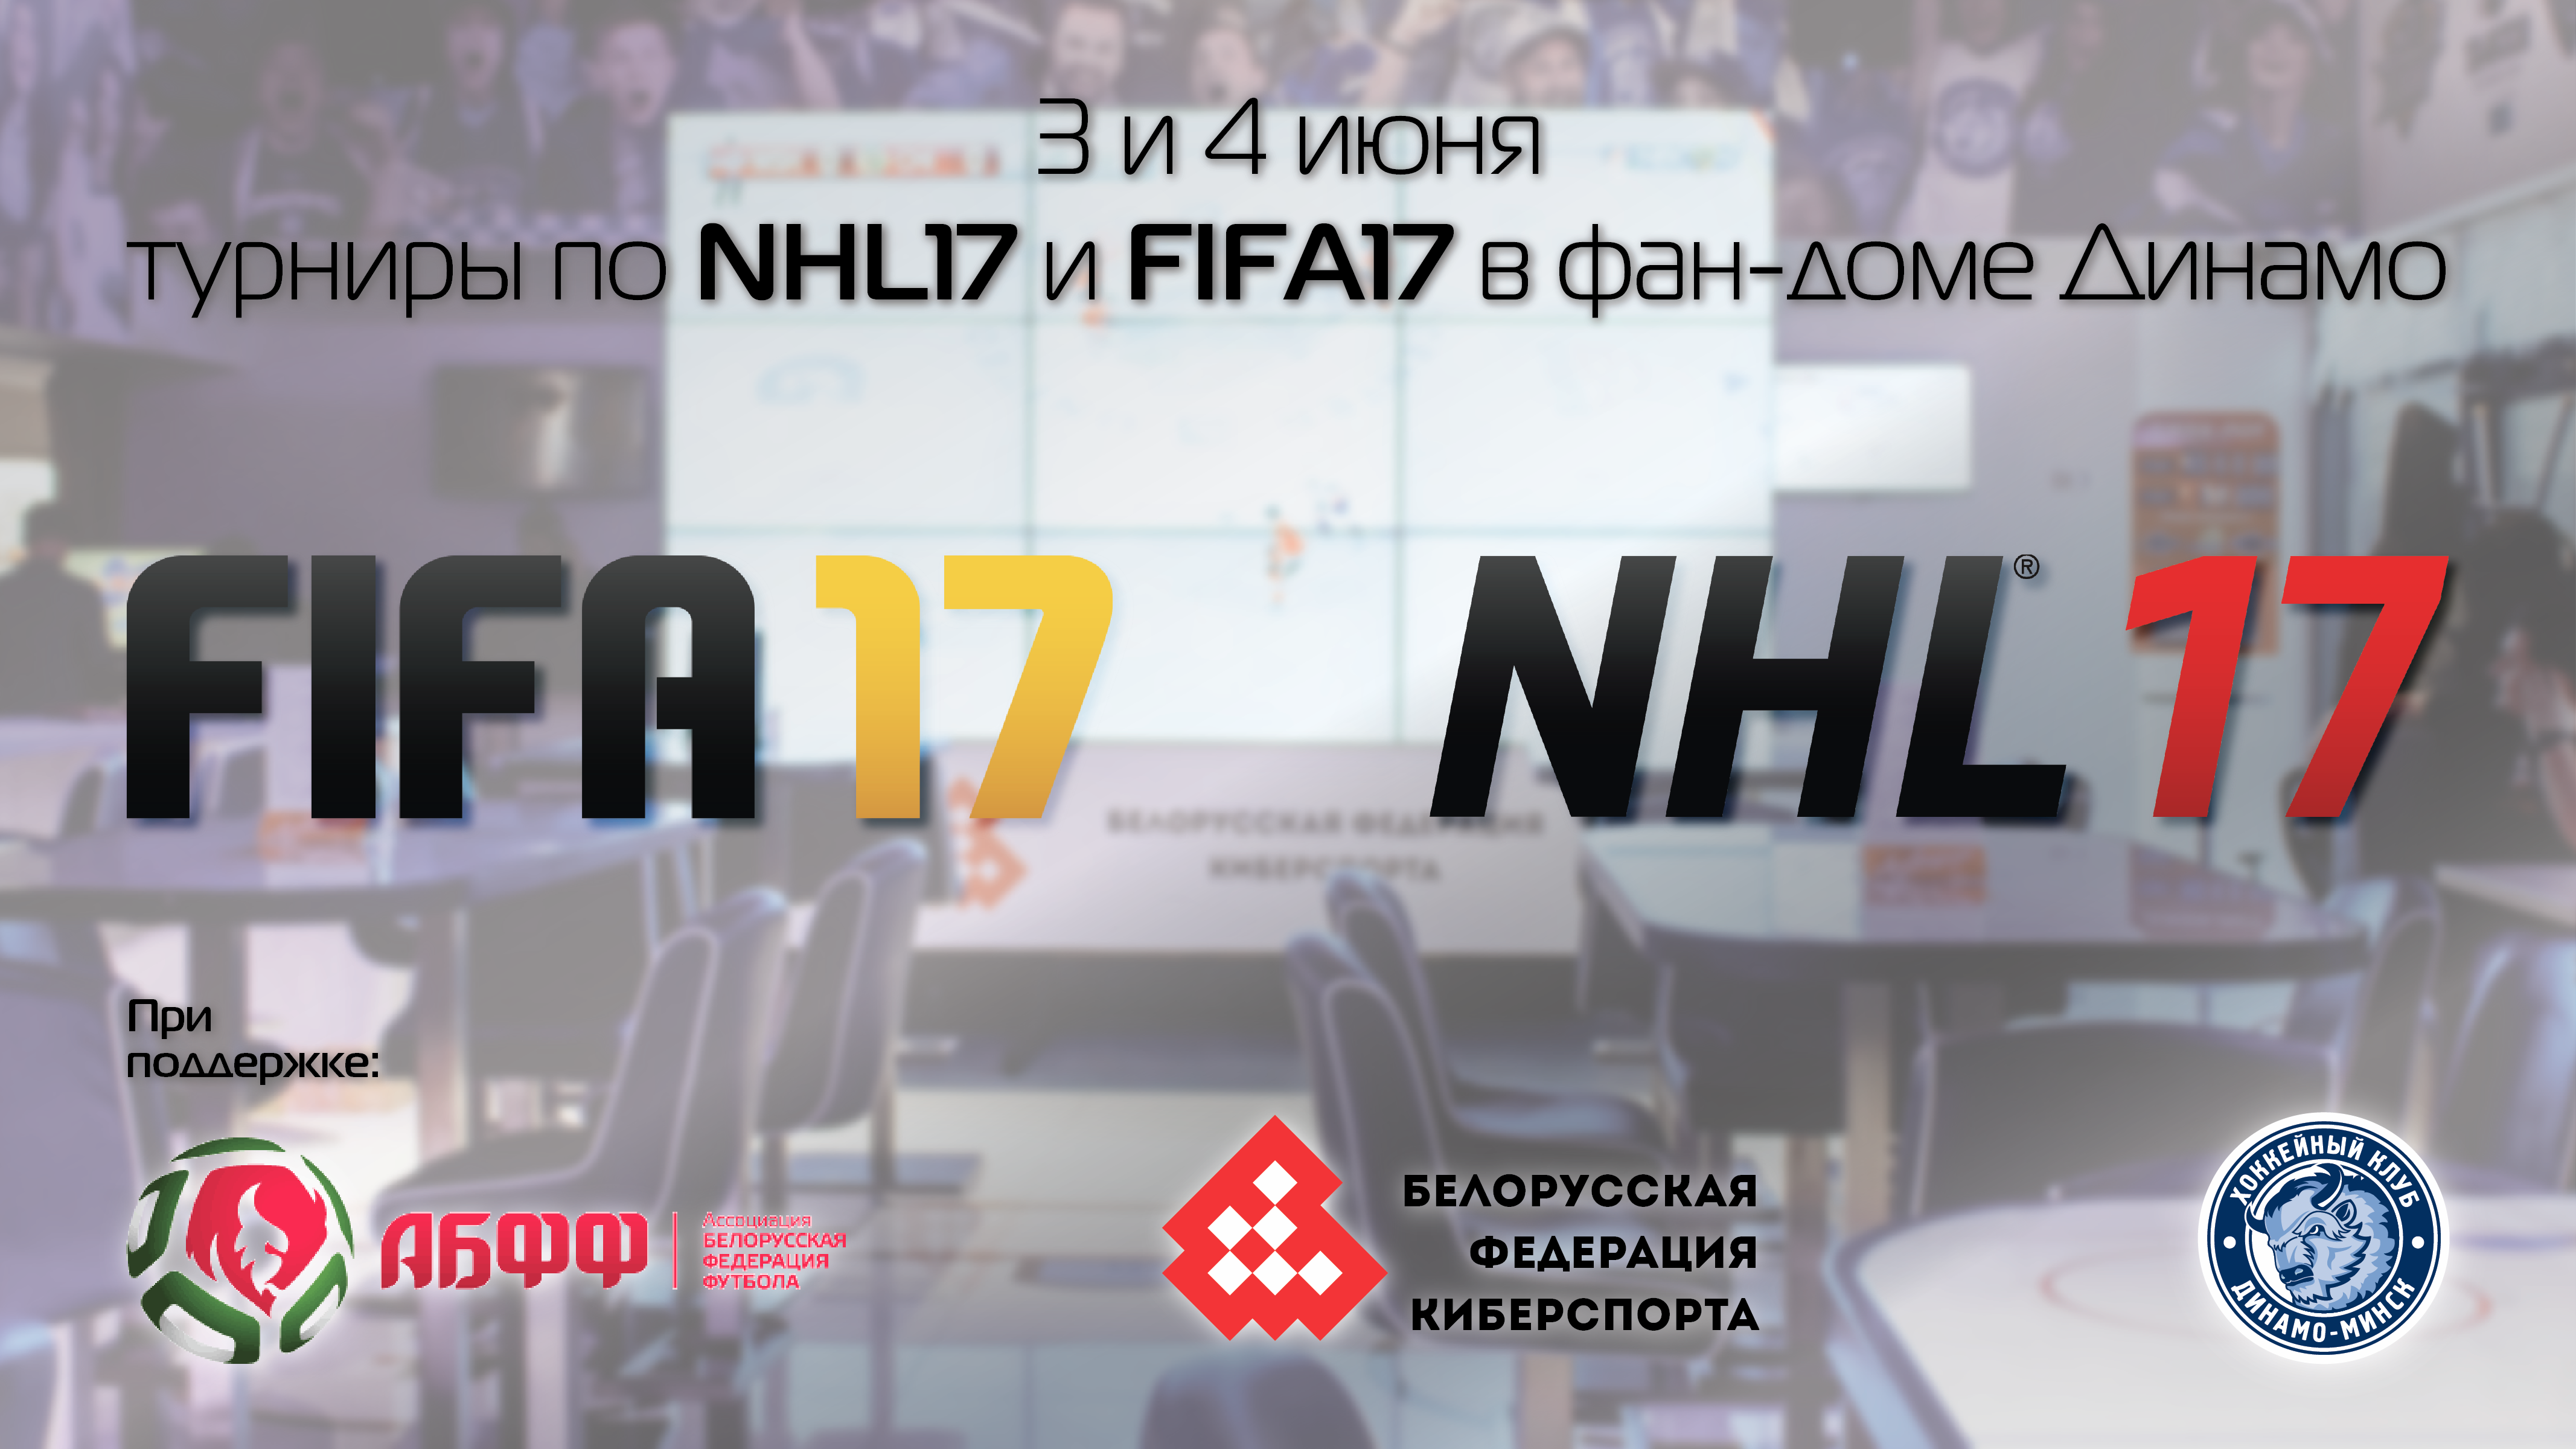 Афиша турнира ФИФА и НХЛ.png